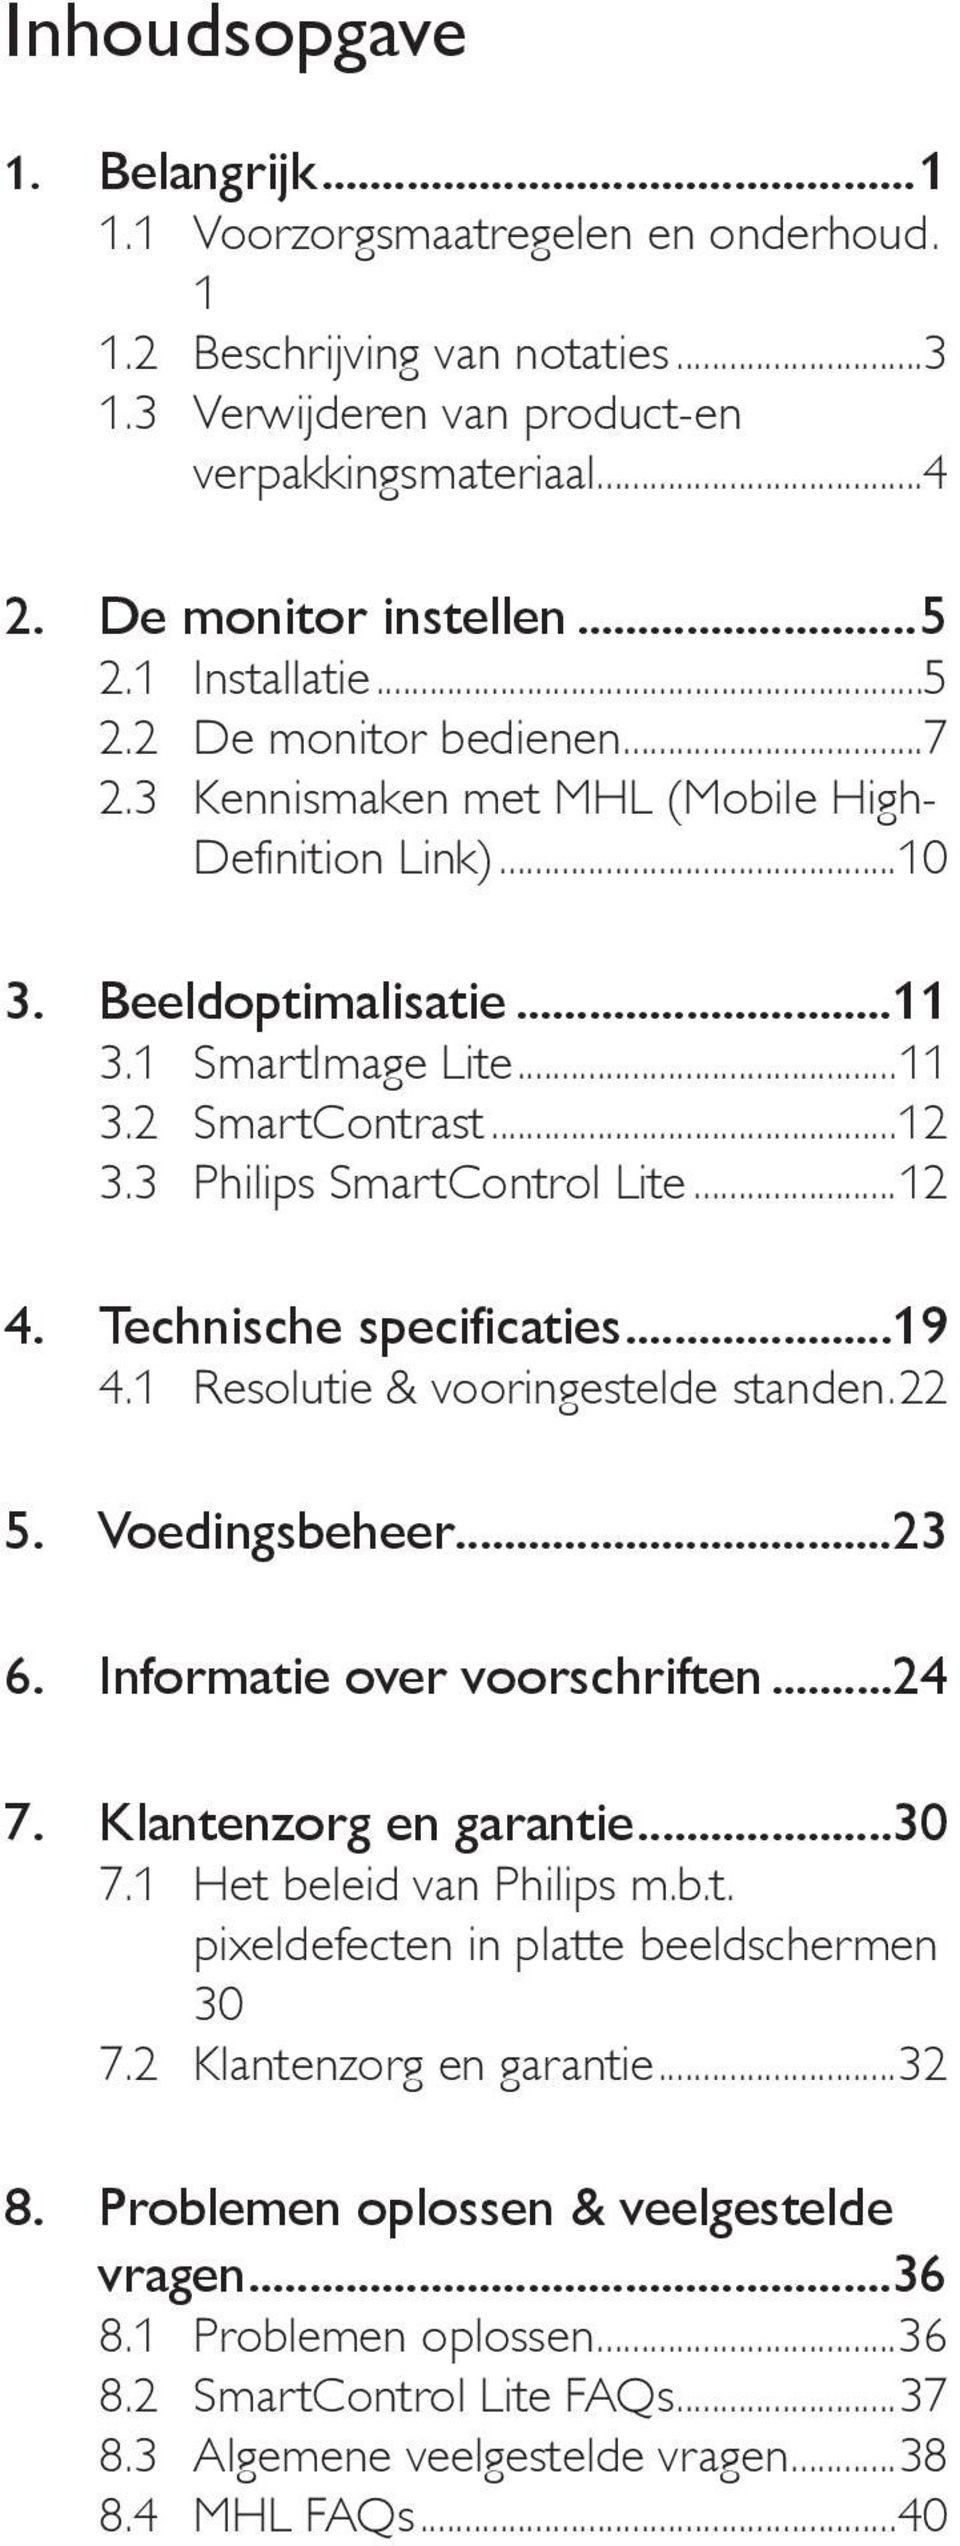 3 Philips SmartControl Lite...12 4. Technische specificaties...19 4.1 Resolutie & vooringestelde standen.22 5. Voedingsbeheer...23 6. Informatie over voorschriften...24 7. Klantenzorg en garantie.